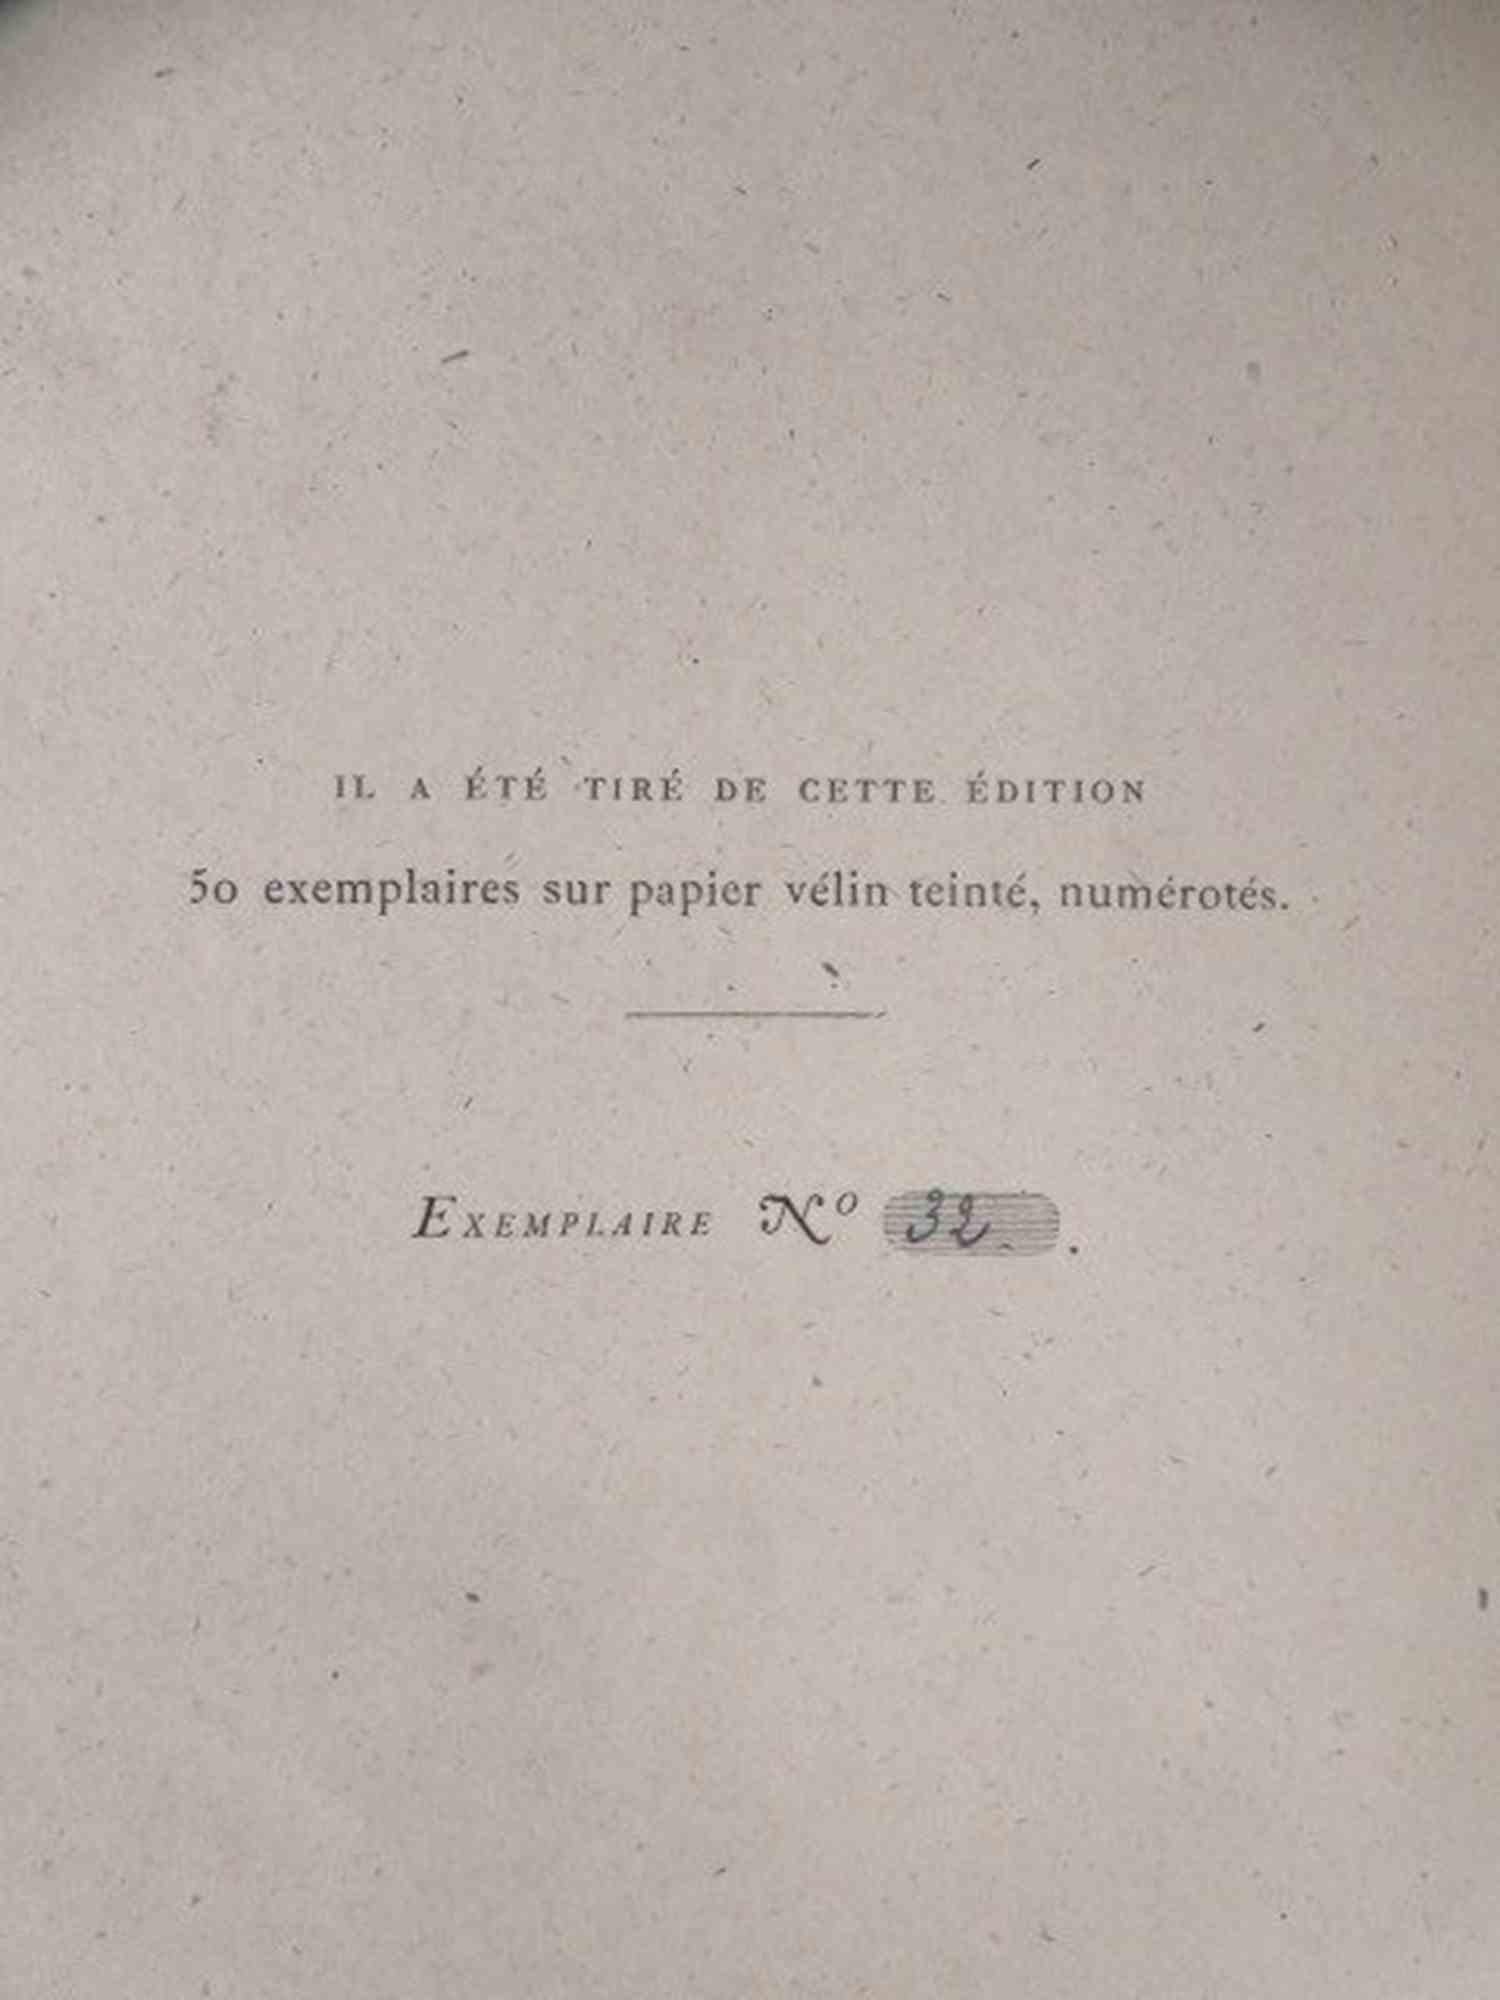 Les Travailleurs de la Mer - Rare Book by Victor Hugo - 1866 For Sale 4